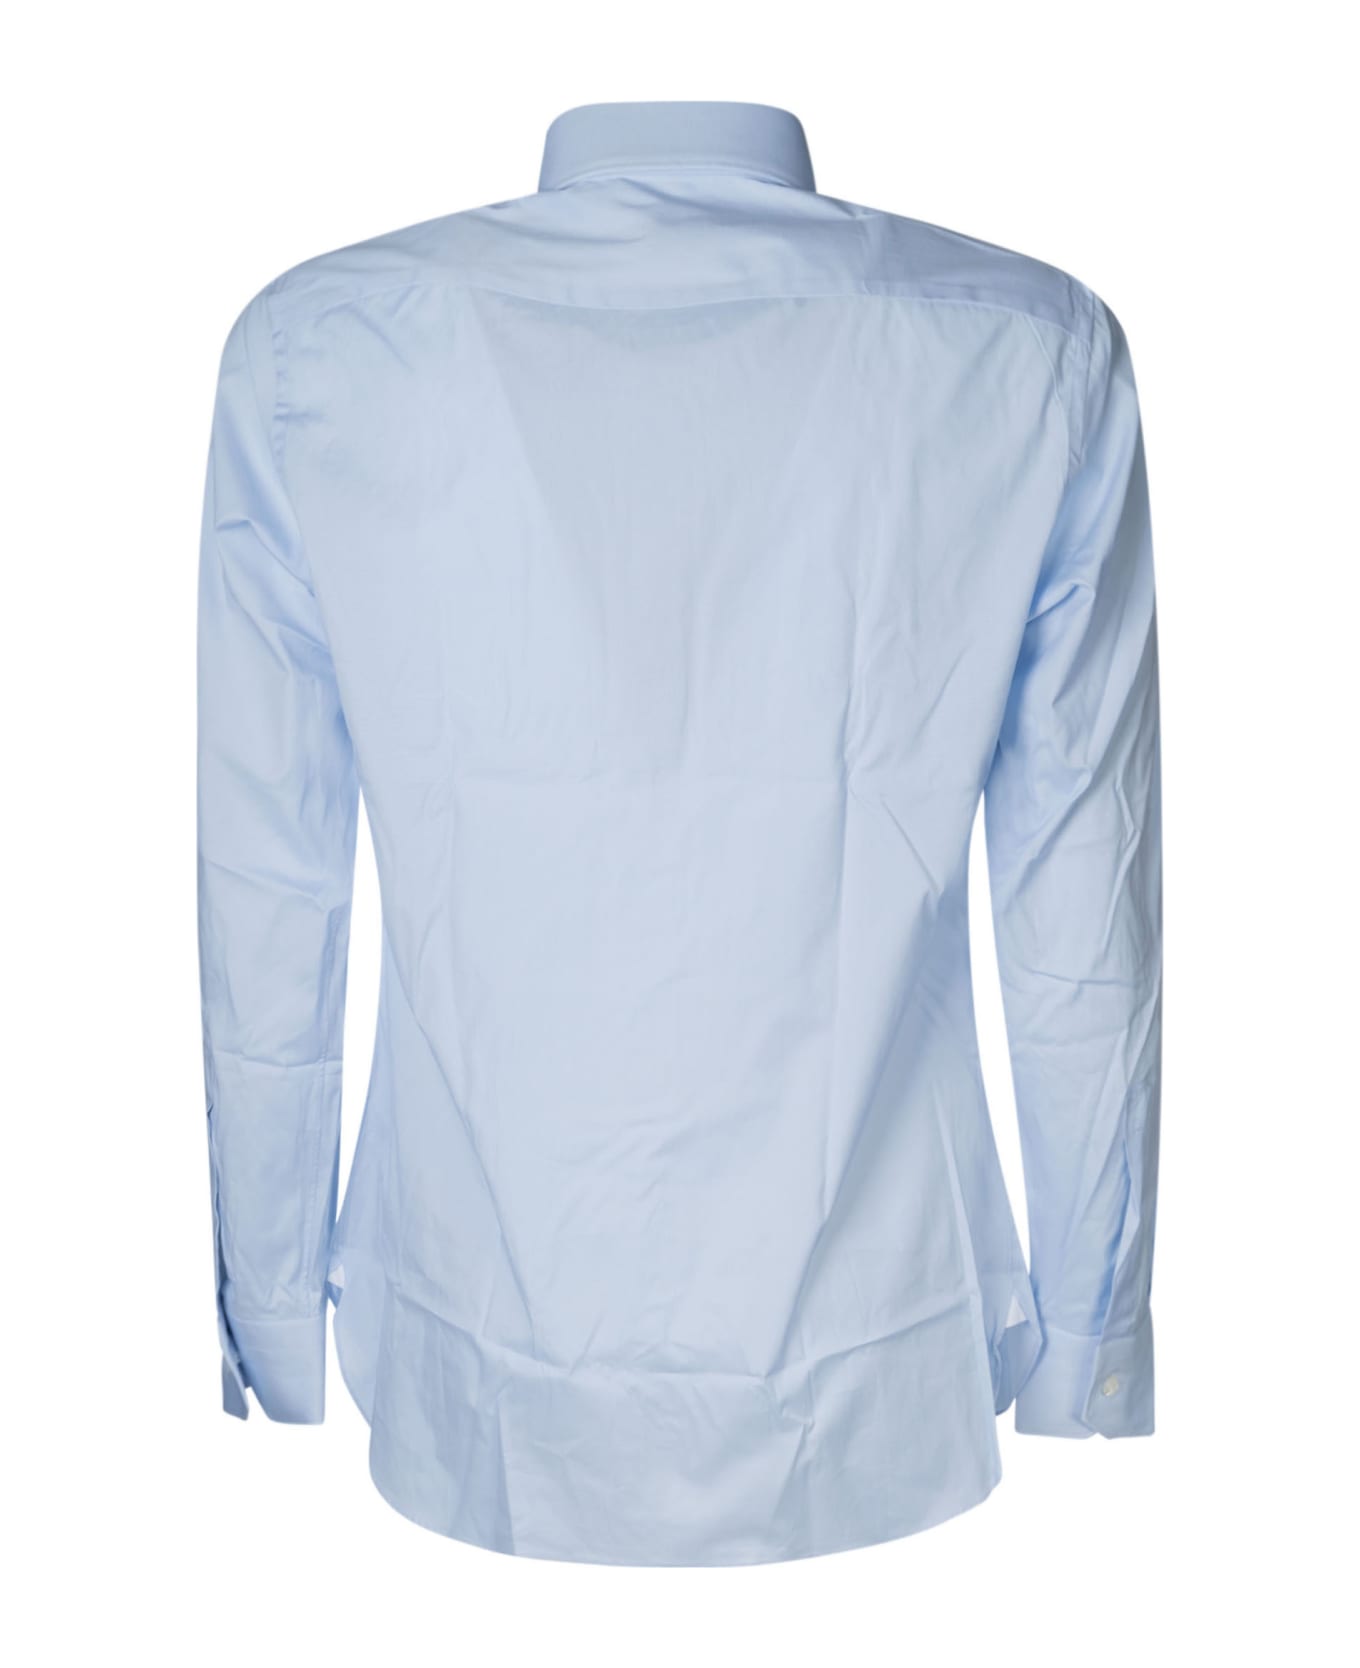 Zegna Long-sleeved Shirt - Celeste